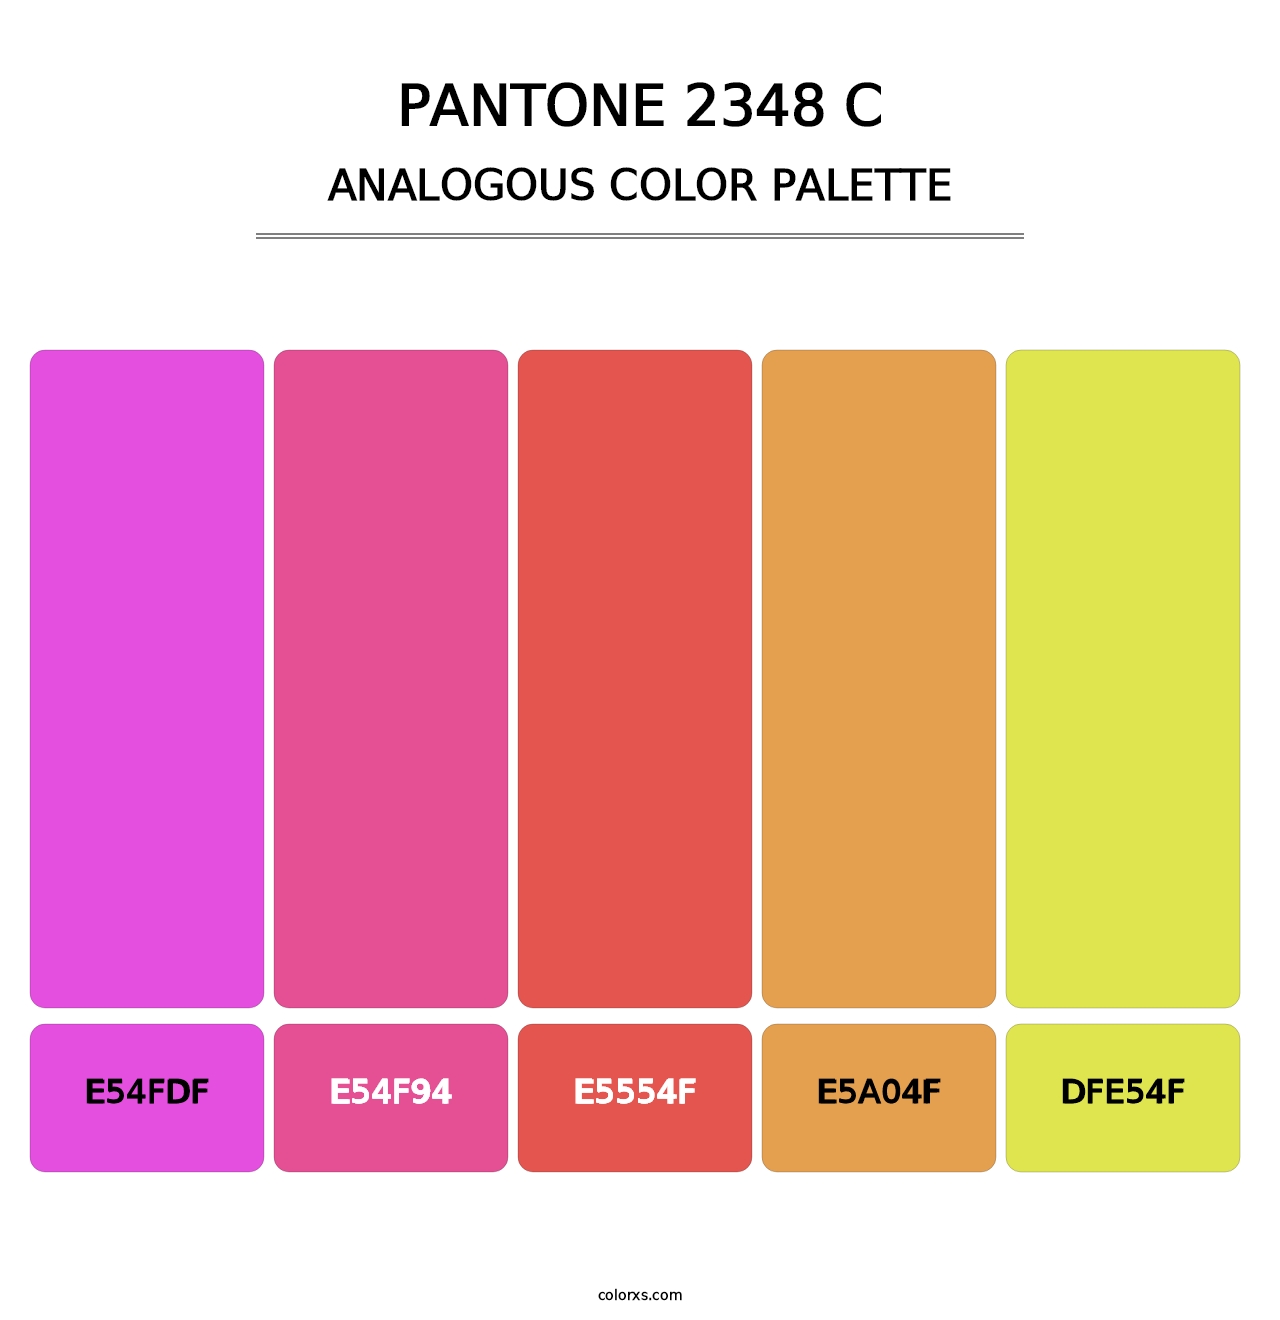 PANTONE 2348 C - Analogous Color Palette